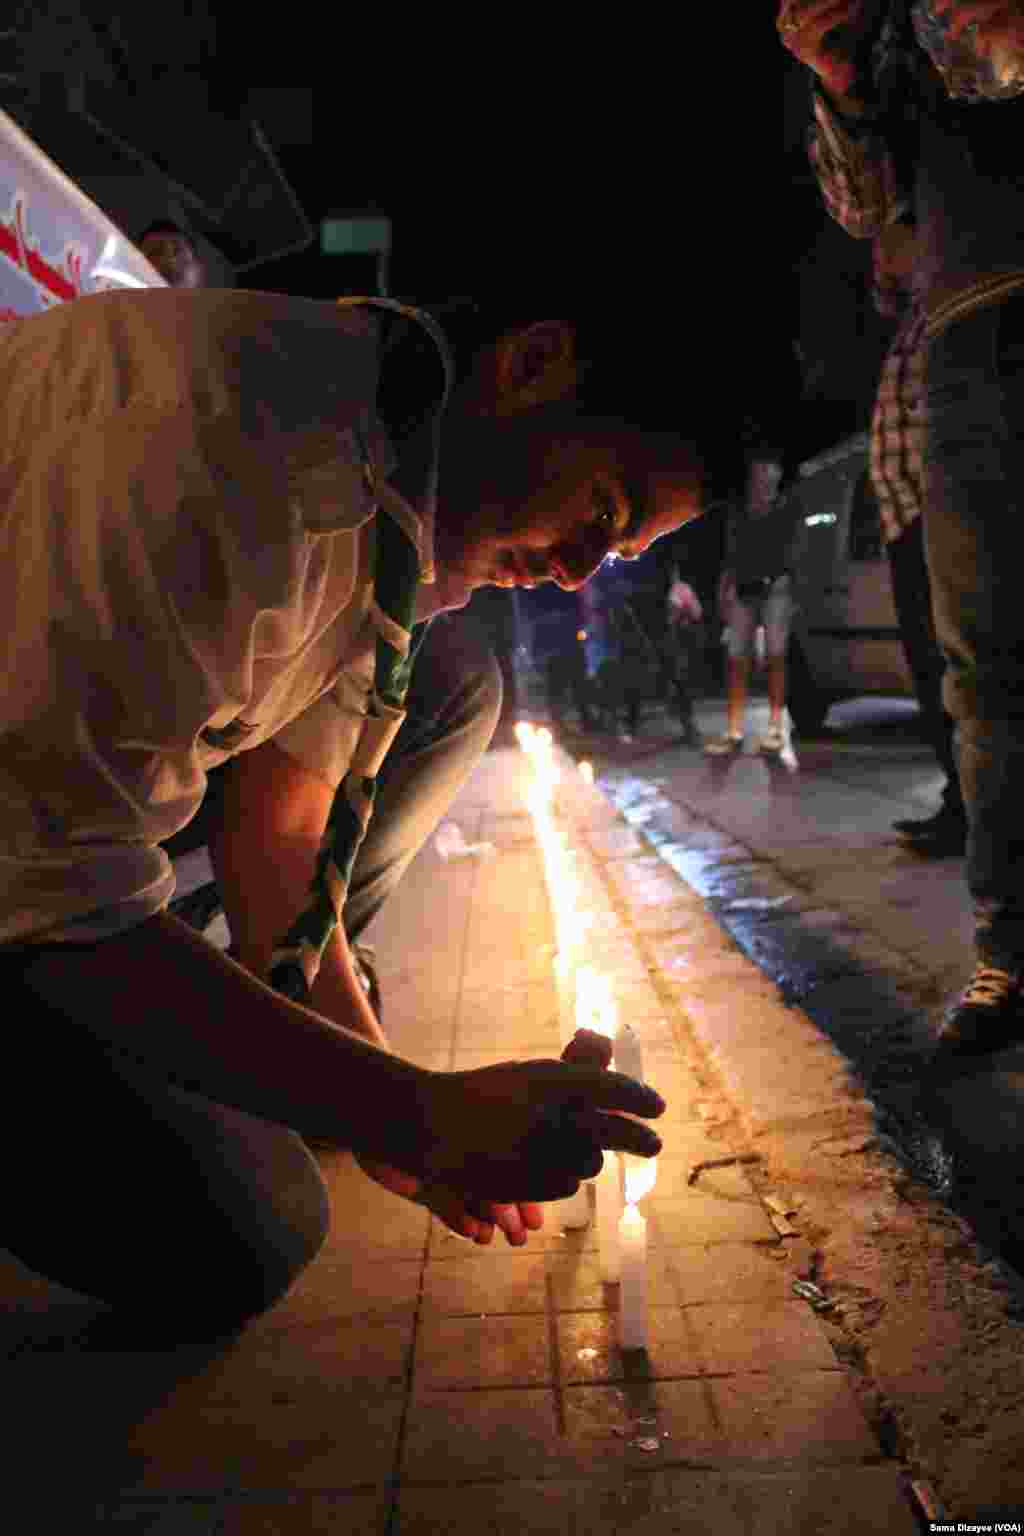 پیرس حملوں میں ہلاک ہونے والوں کی یاد میں بیروت میں بھی شمعیں روشن کی گئیں۔